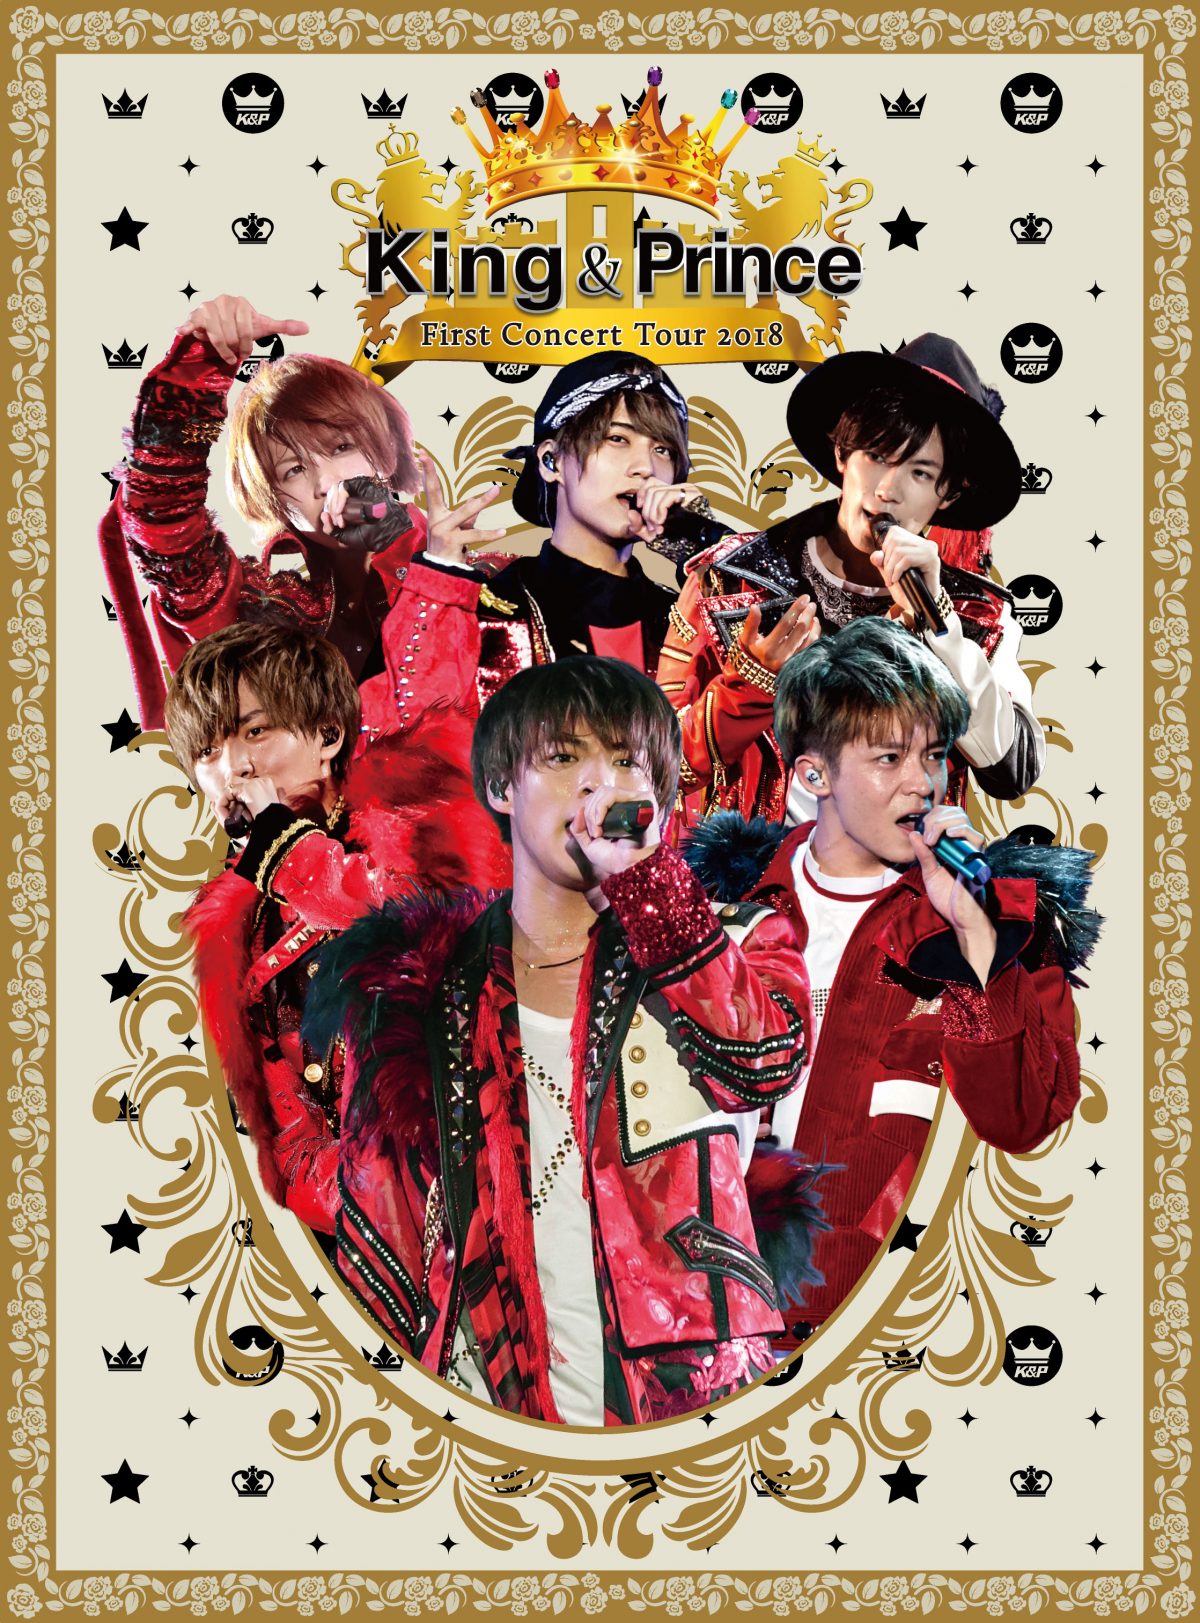 12/12発売「King & Prince First Concert Tour 2018」ジャケット写真更新 - King & Prince